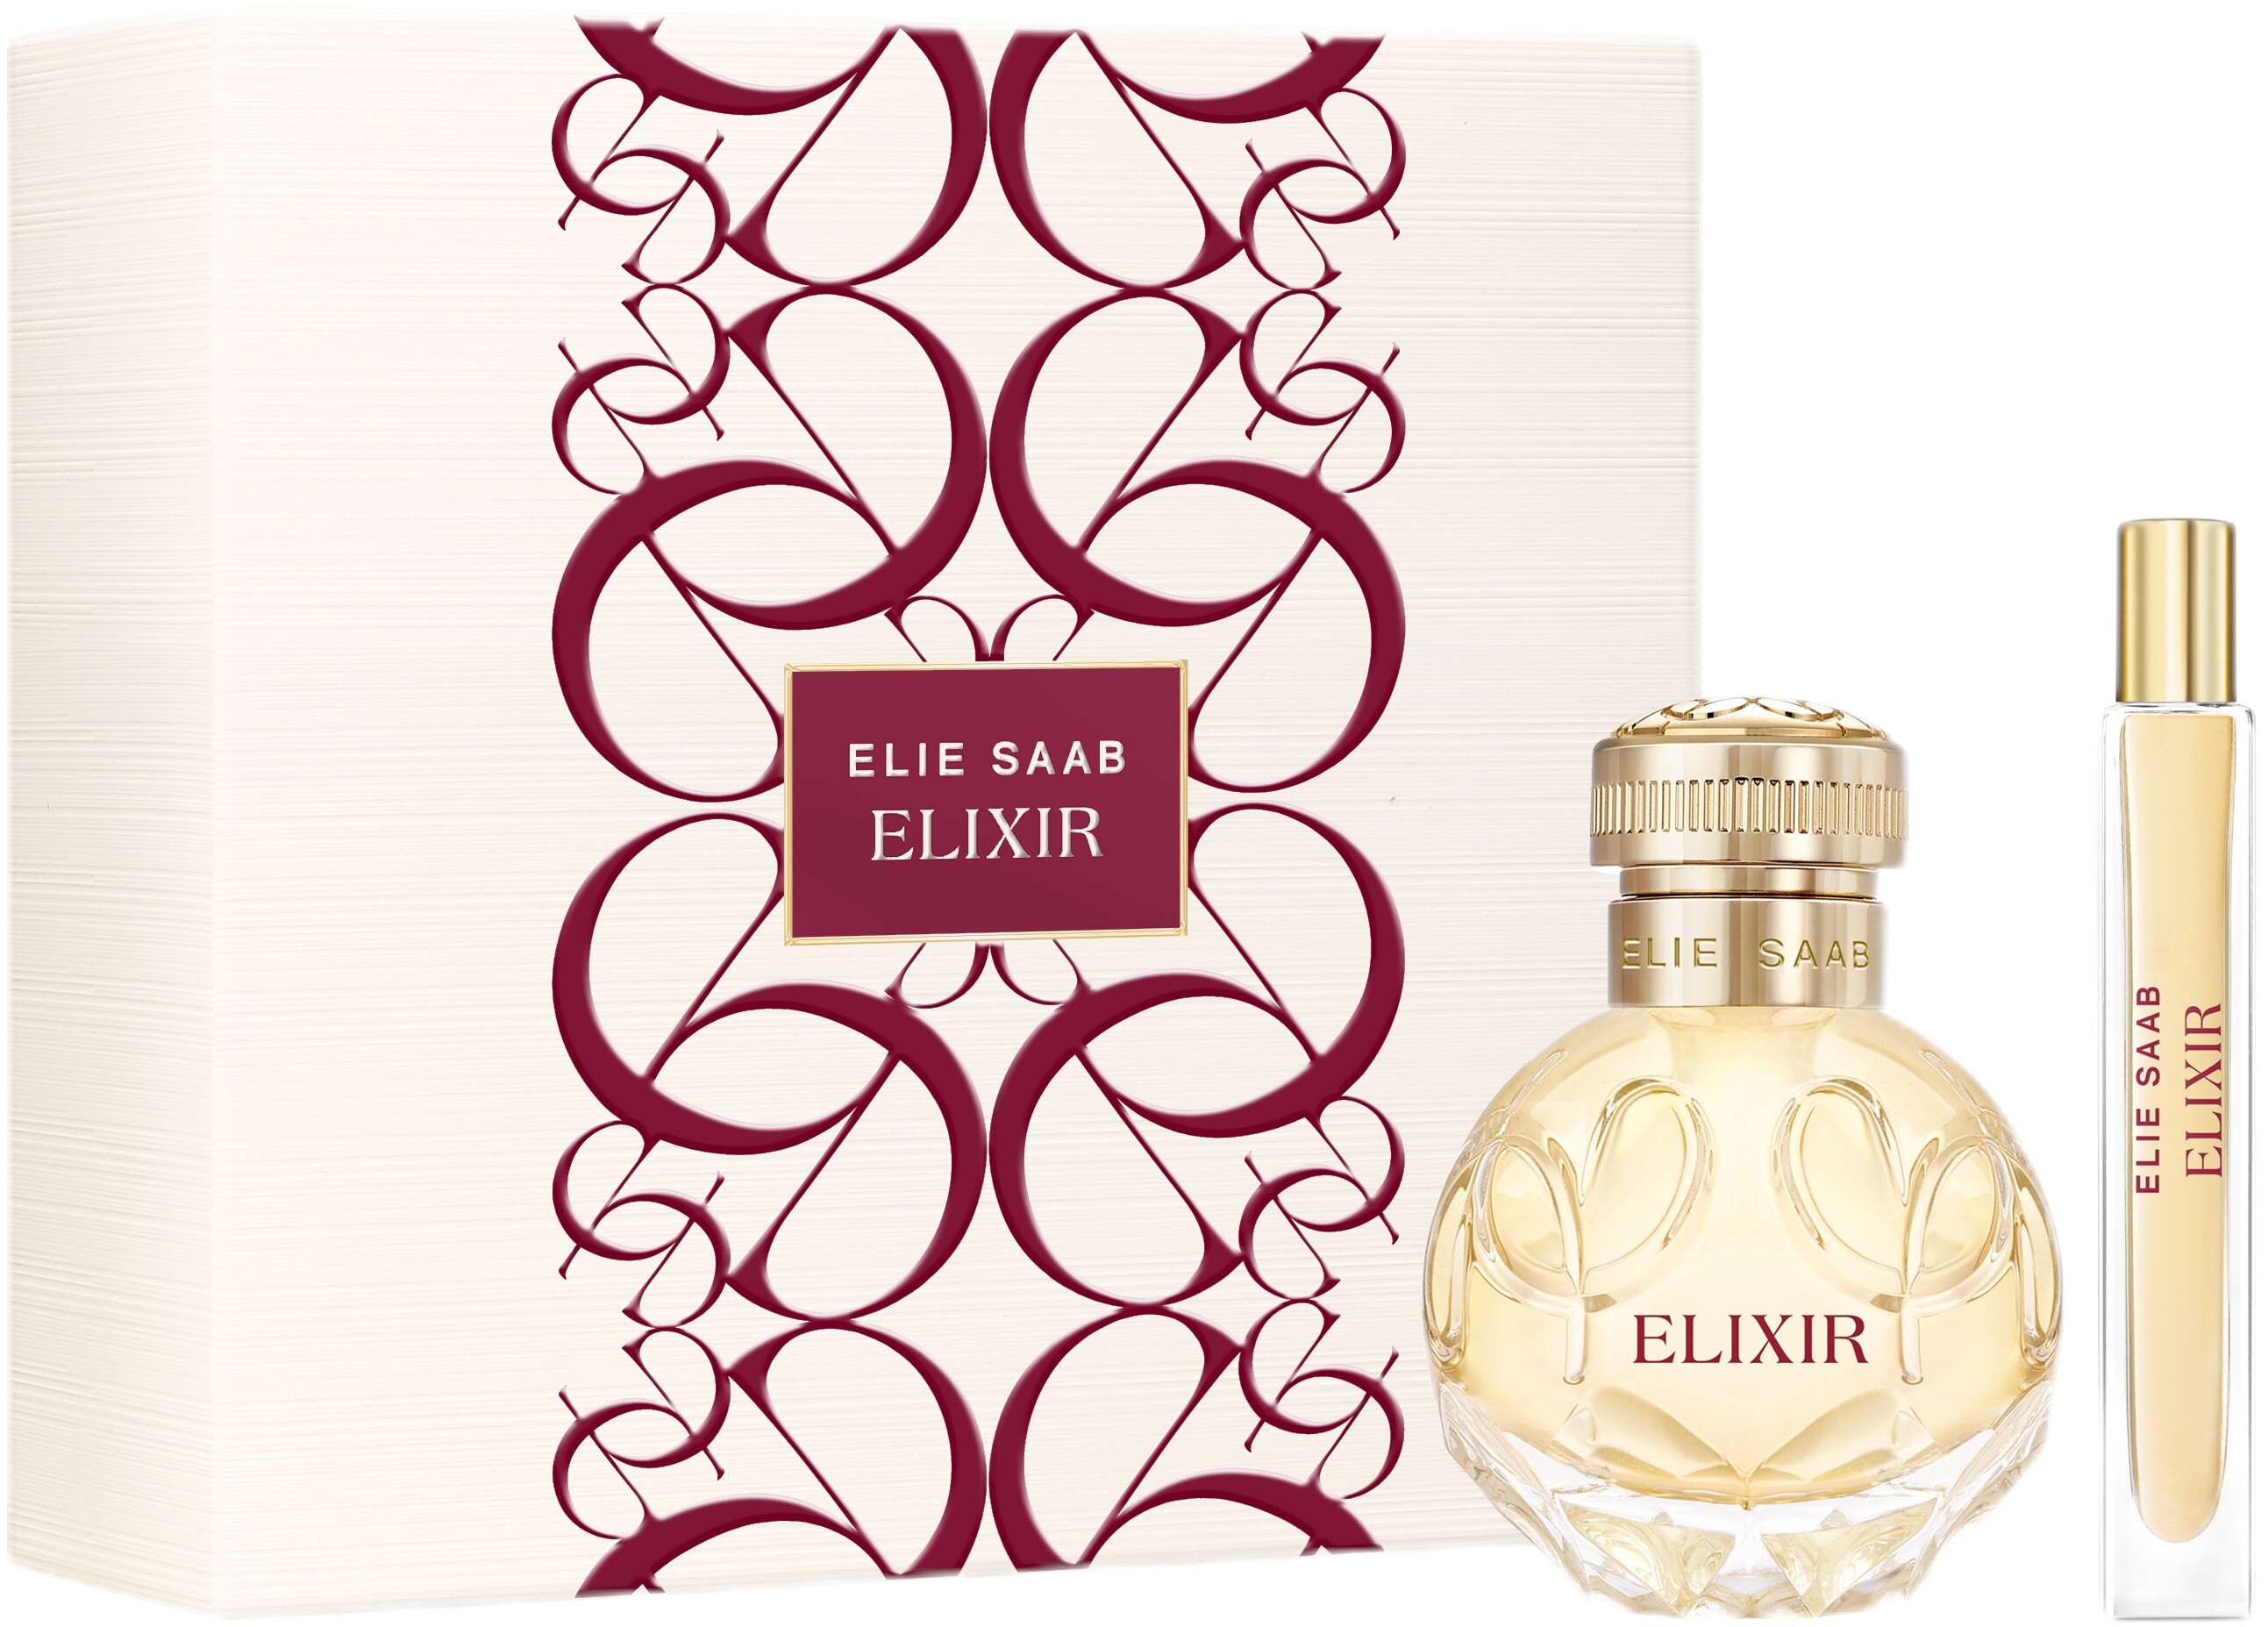 Elie Saab Elixir Eau de Parfum Spray 50ml Gift Set